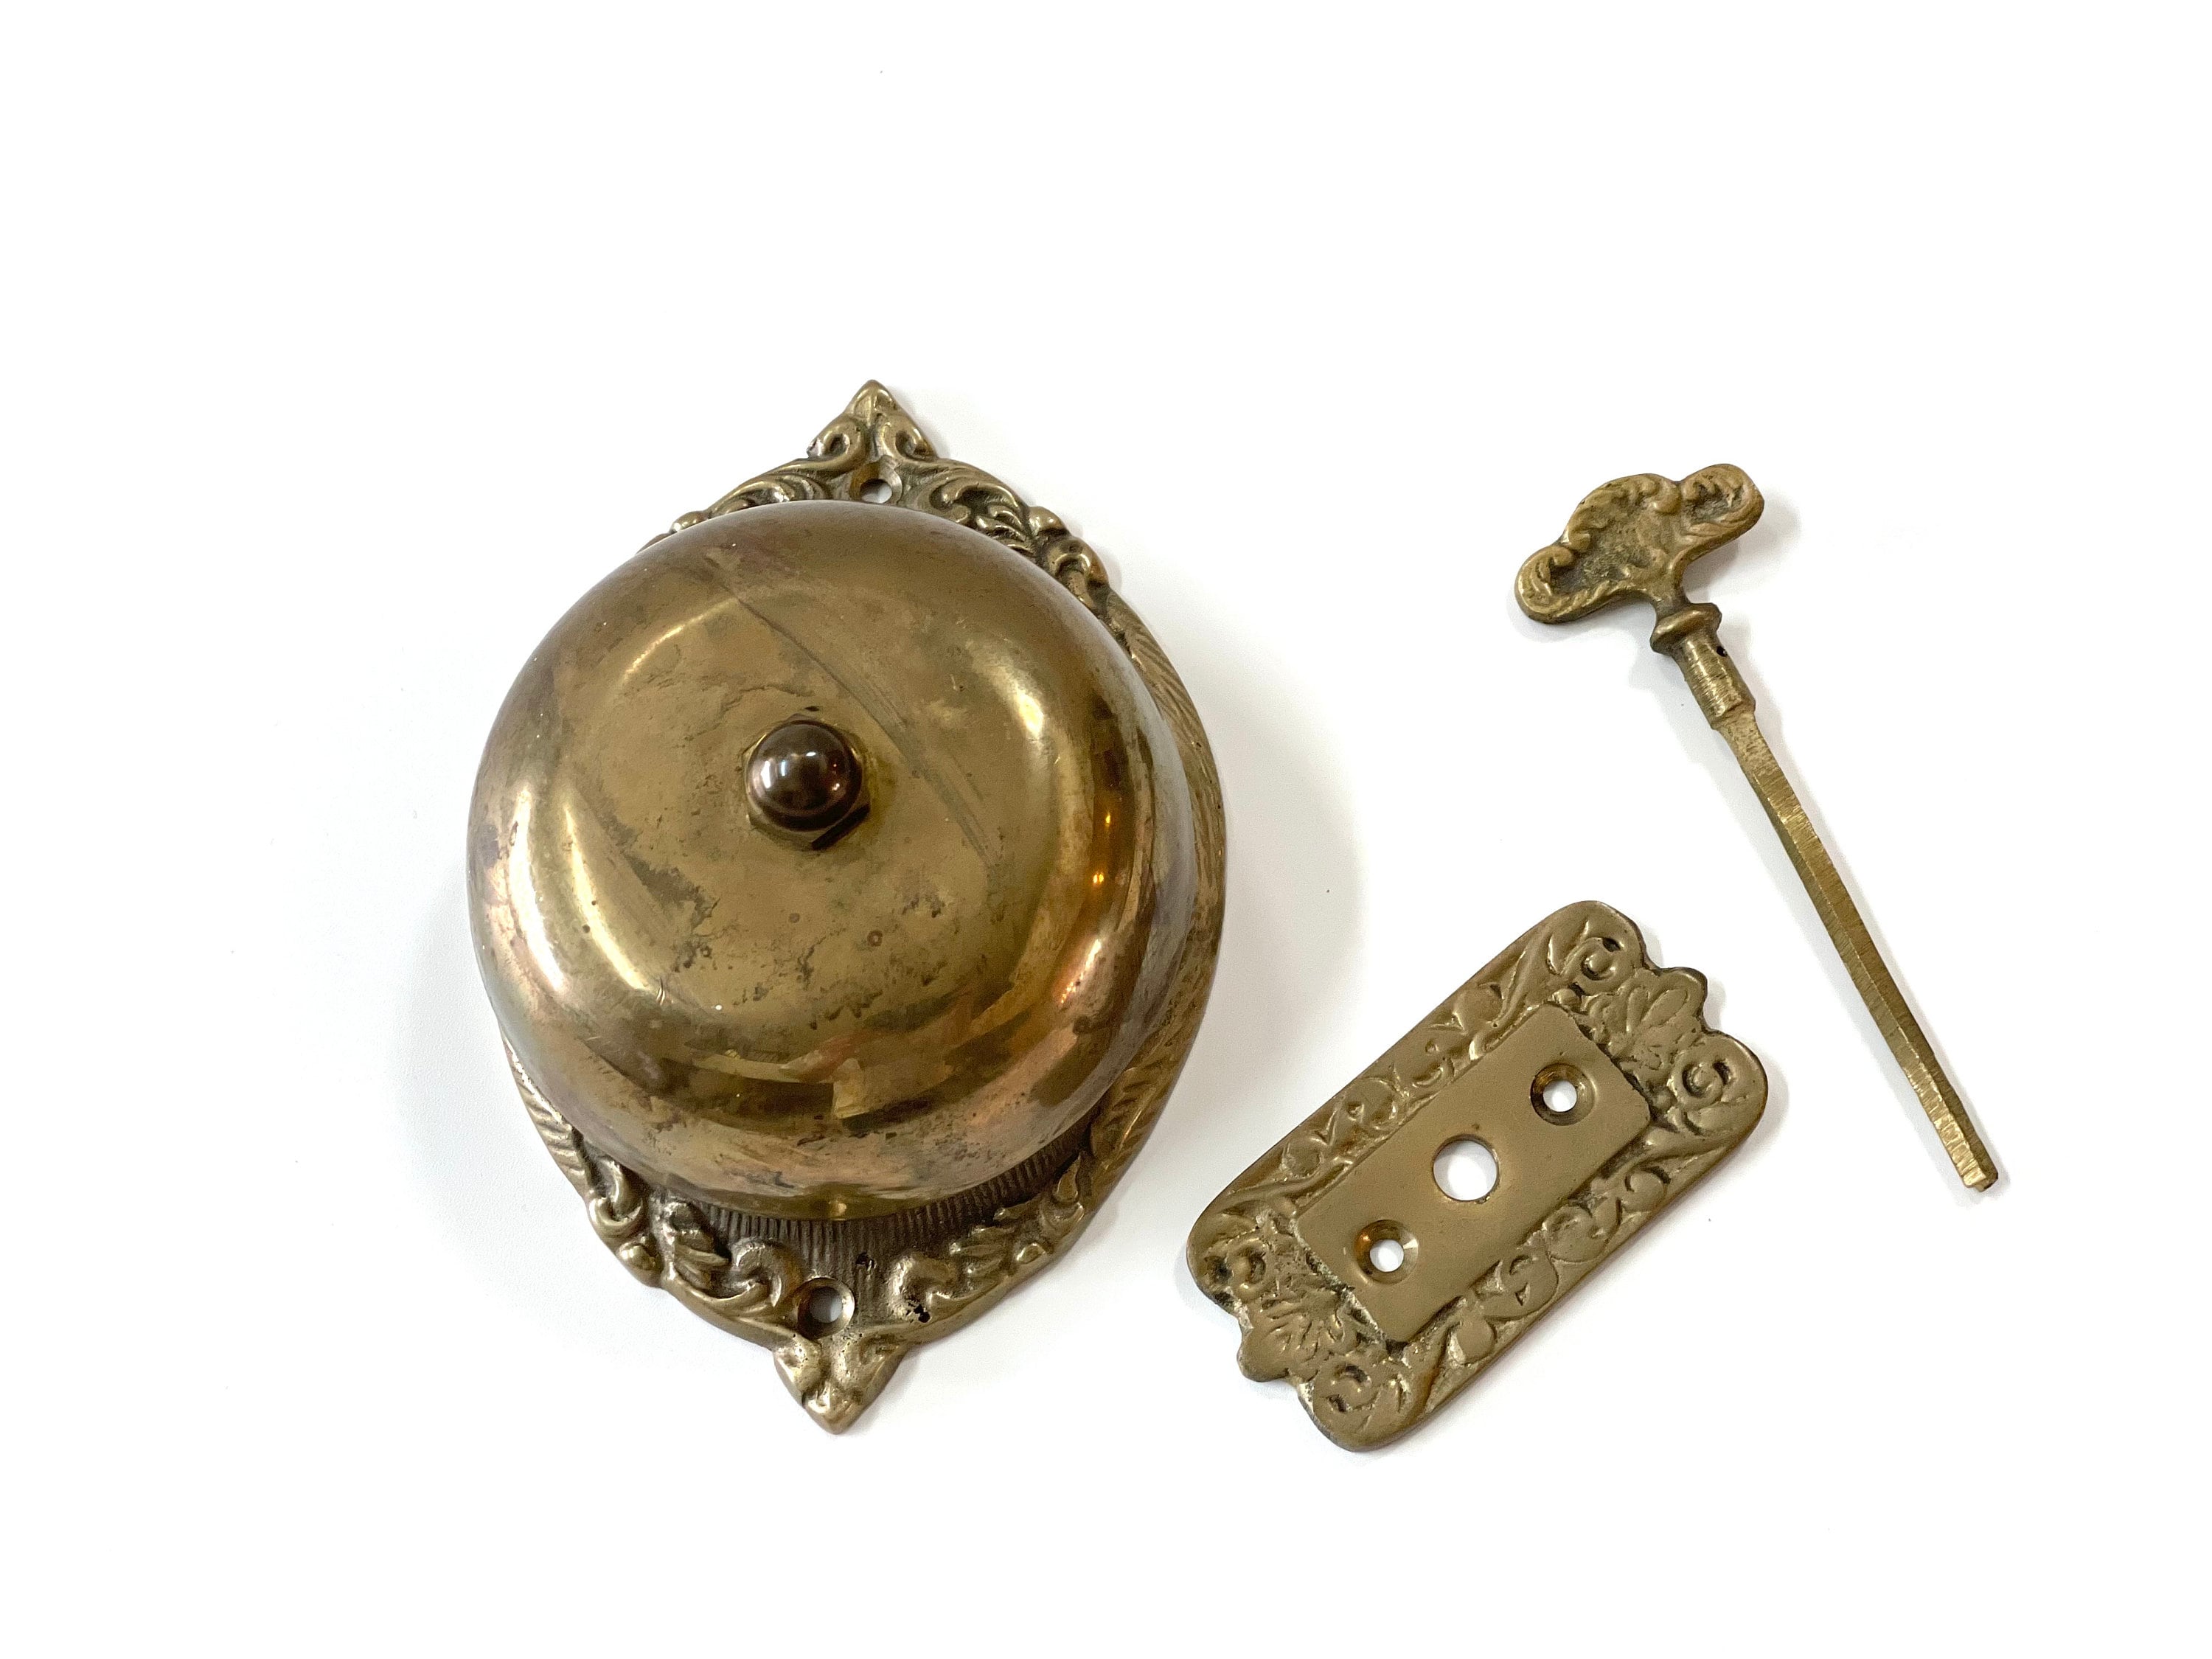 Slim Classic Doorbell - Rustic Bronze - Our Bestselling Doorbell – timber  bronze